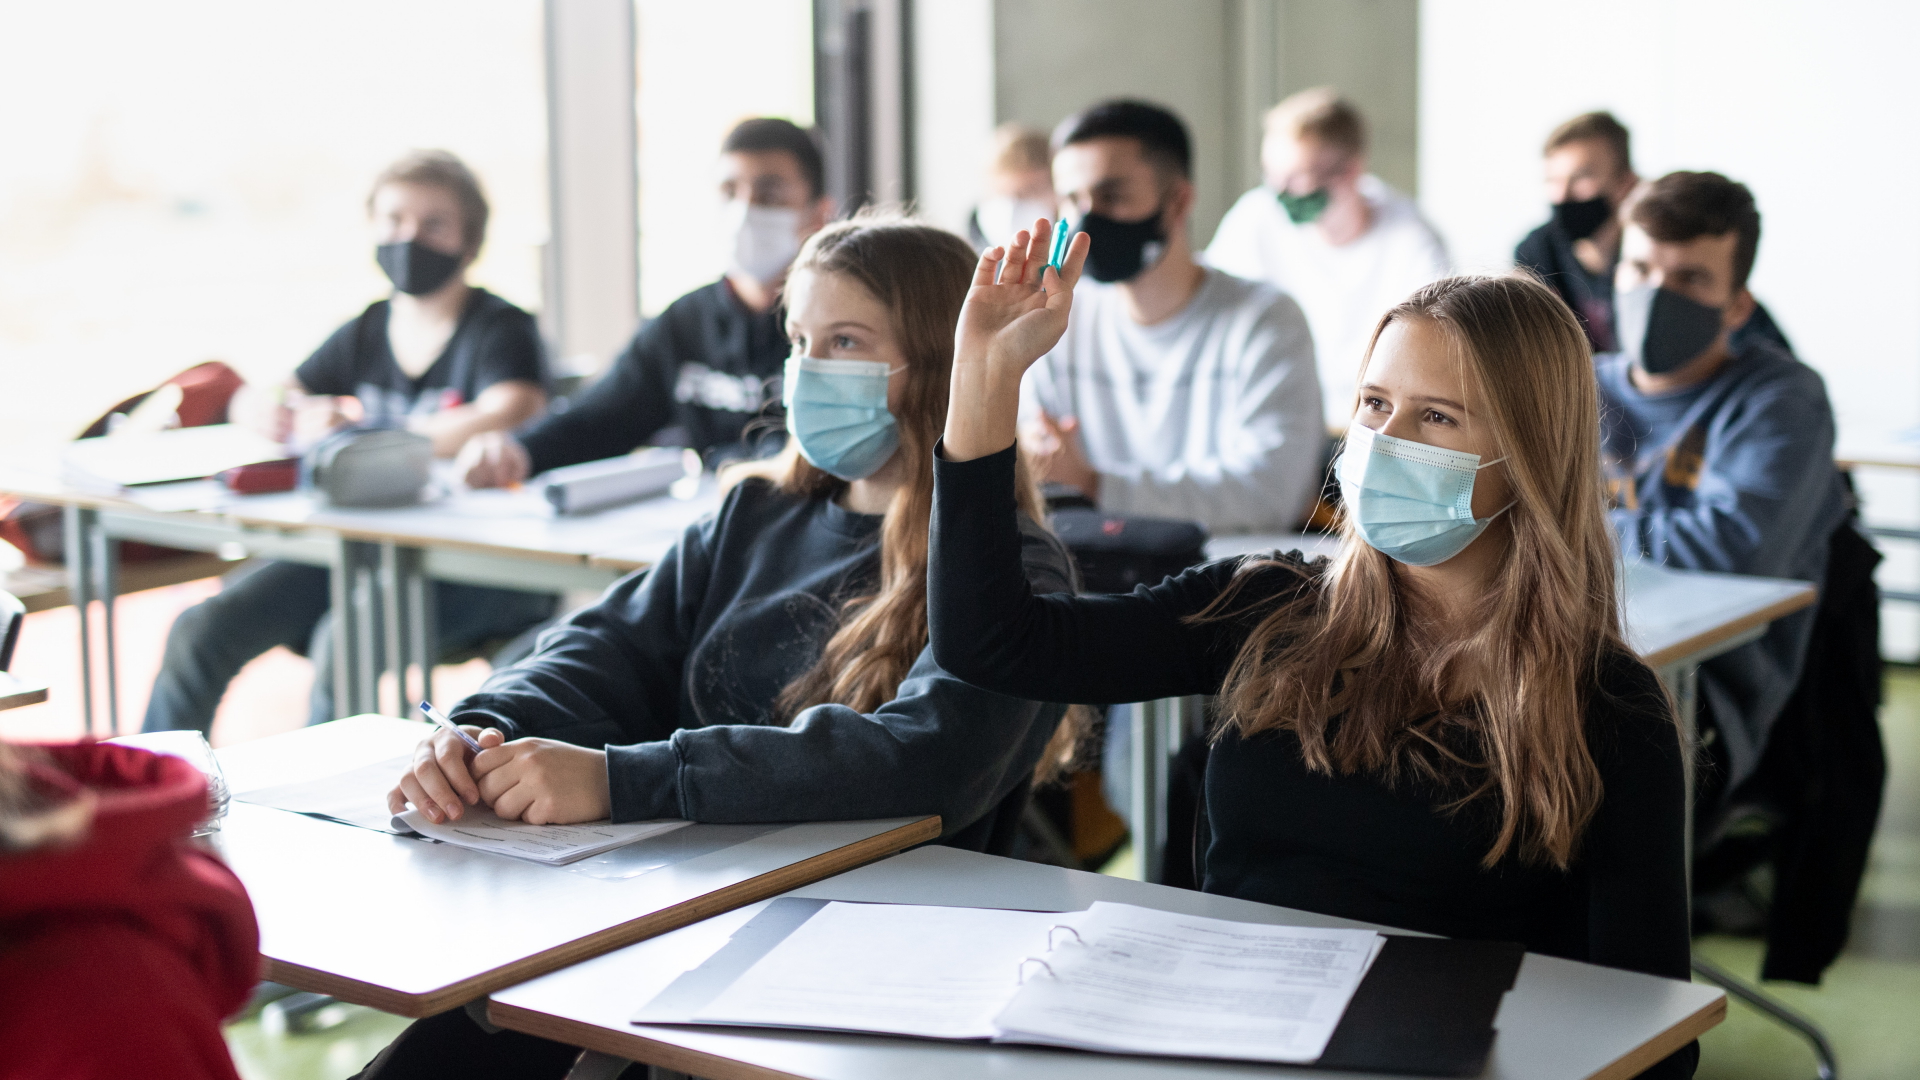 Schülerinnen und Schüler in München nehmen mit Mund- und Nasenschutz am Unterricht teil. (Archivbild)| Bildquelle: dpa